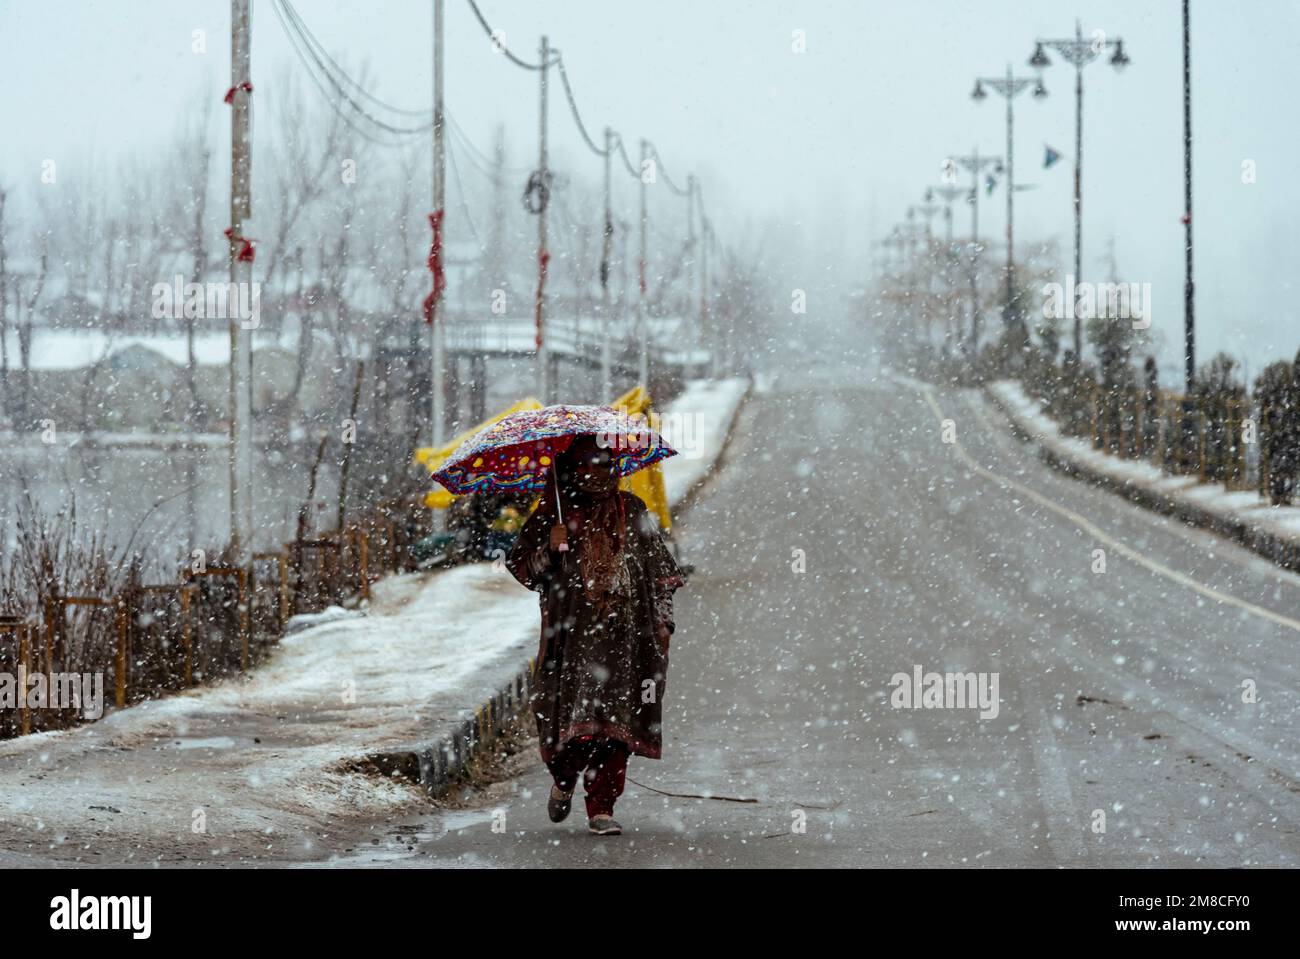 Una donna con un ombrello cammina lungo una strada innevata durante le nevicate. Il Kashmir ha ricevuto nevicate fresche, con le cali più alte della valle che hanno ricevuto nevicate da moderate a pesanti e nevicate da leggere a moderate in pianura, causando una visibilità distruttiva. Questo ha influito sulle operazioni di volo insieme alla chiusura dell'autostrada nazionale Srinagar-Jammu. Foto Stock